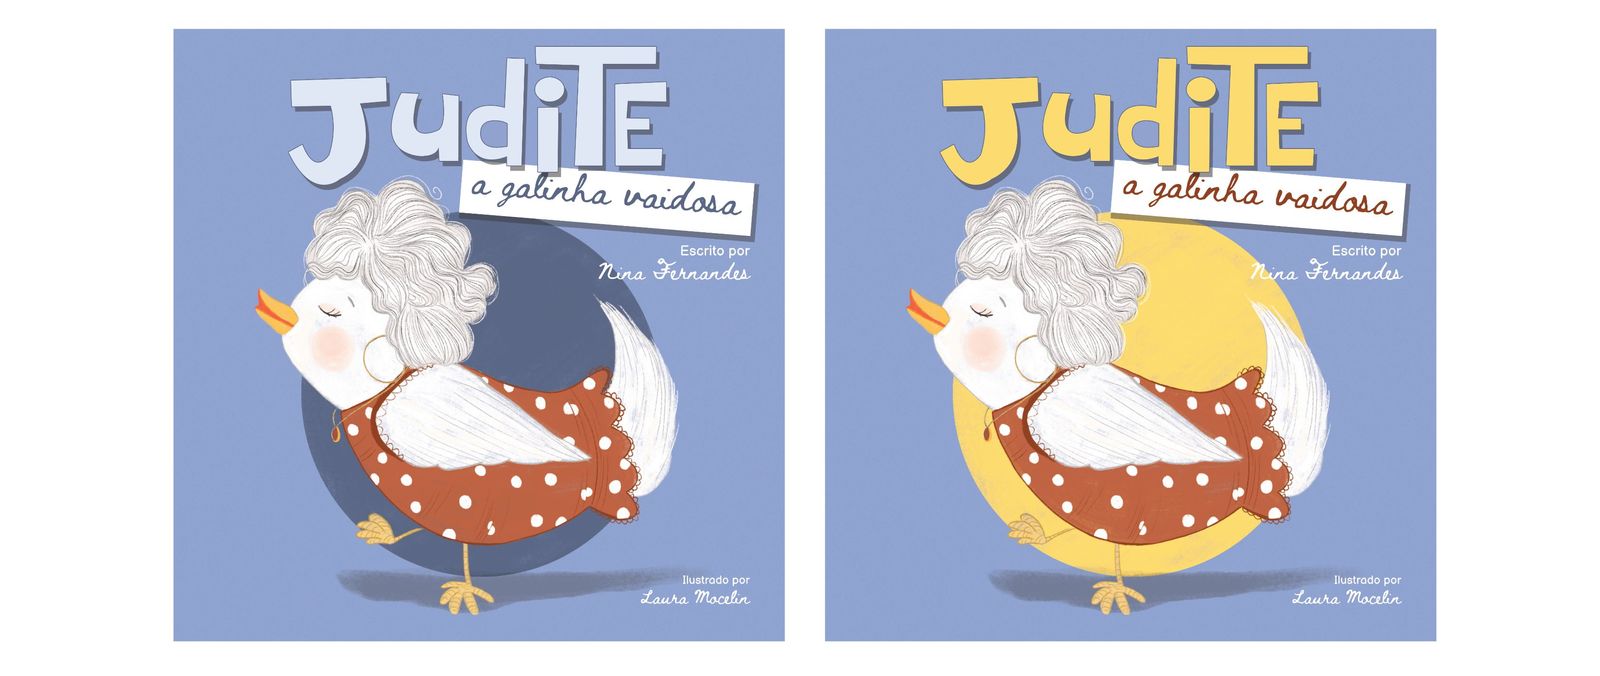 Judite, a galinha vaidosa book image #2